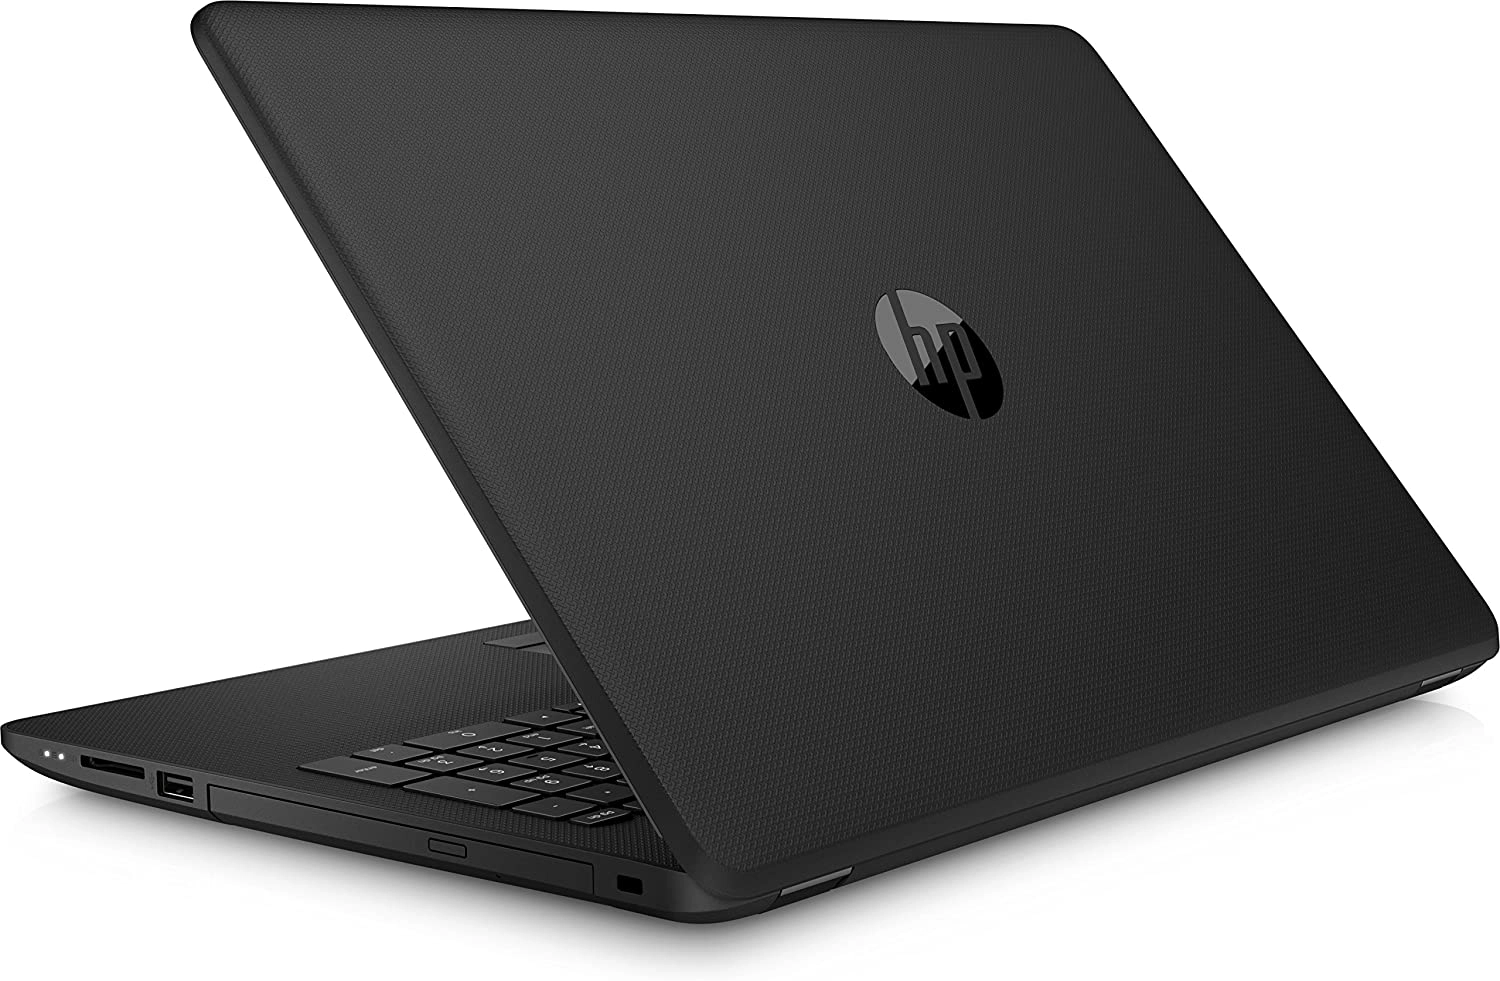 HP 15-bw059ns laptop image